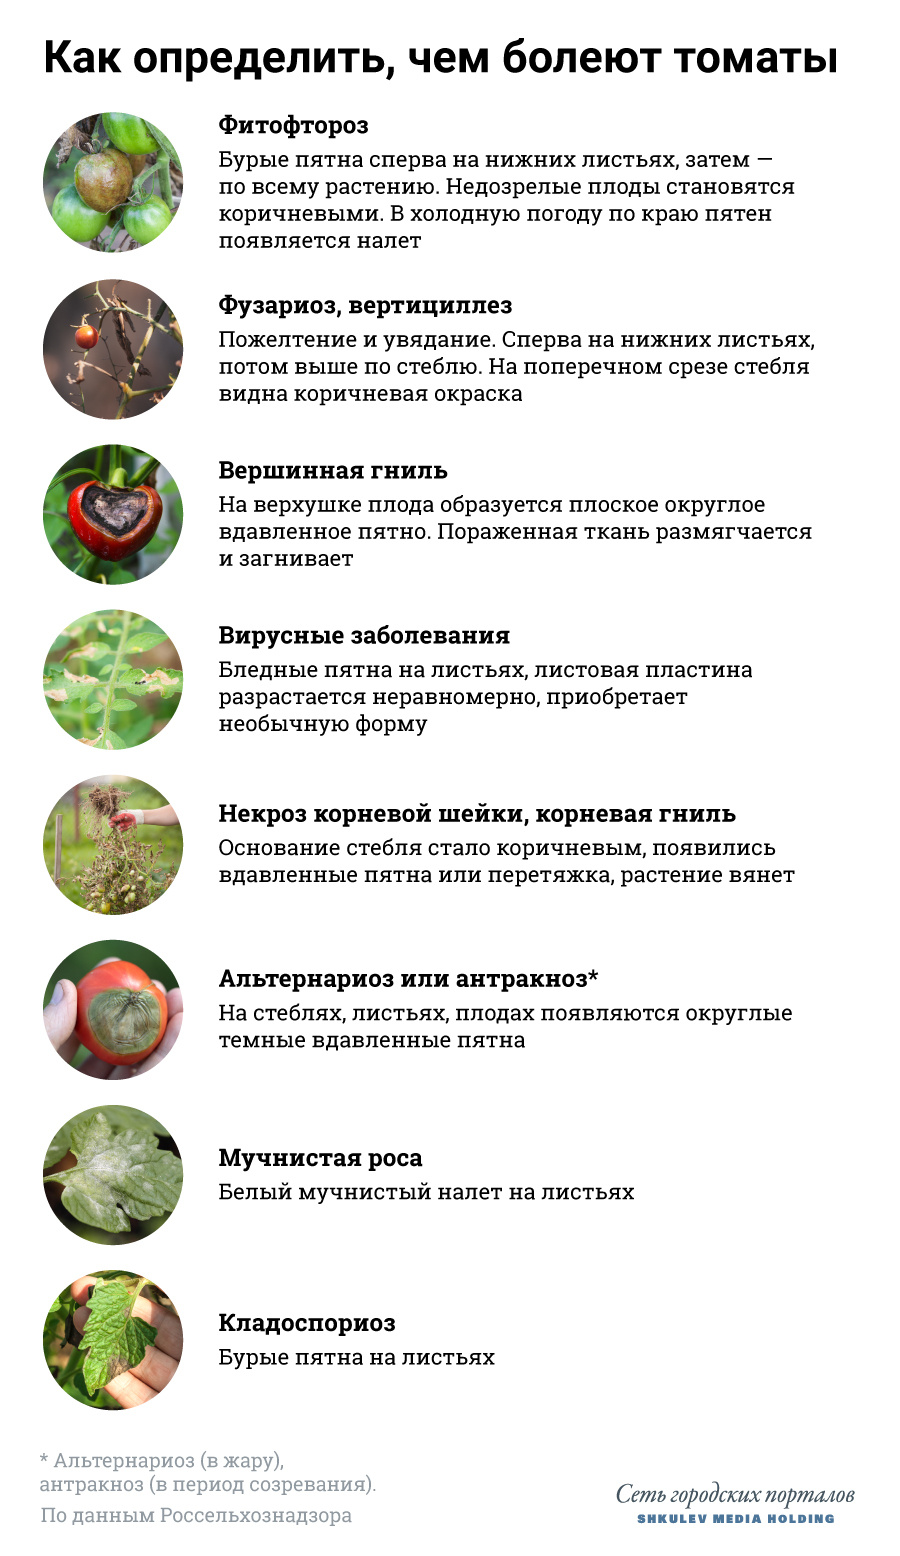 Болезни томатов и способы борьбы с ними - 7 августа 2021 - НГС24